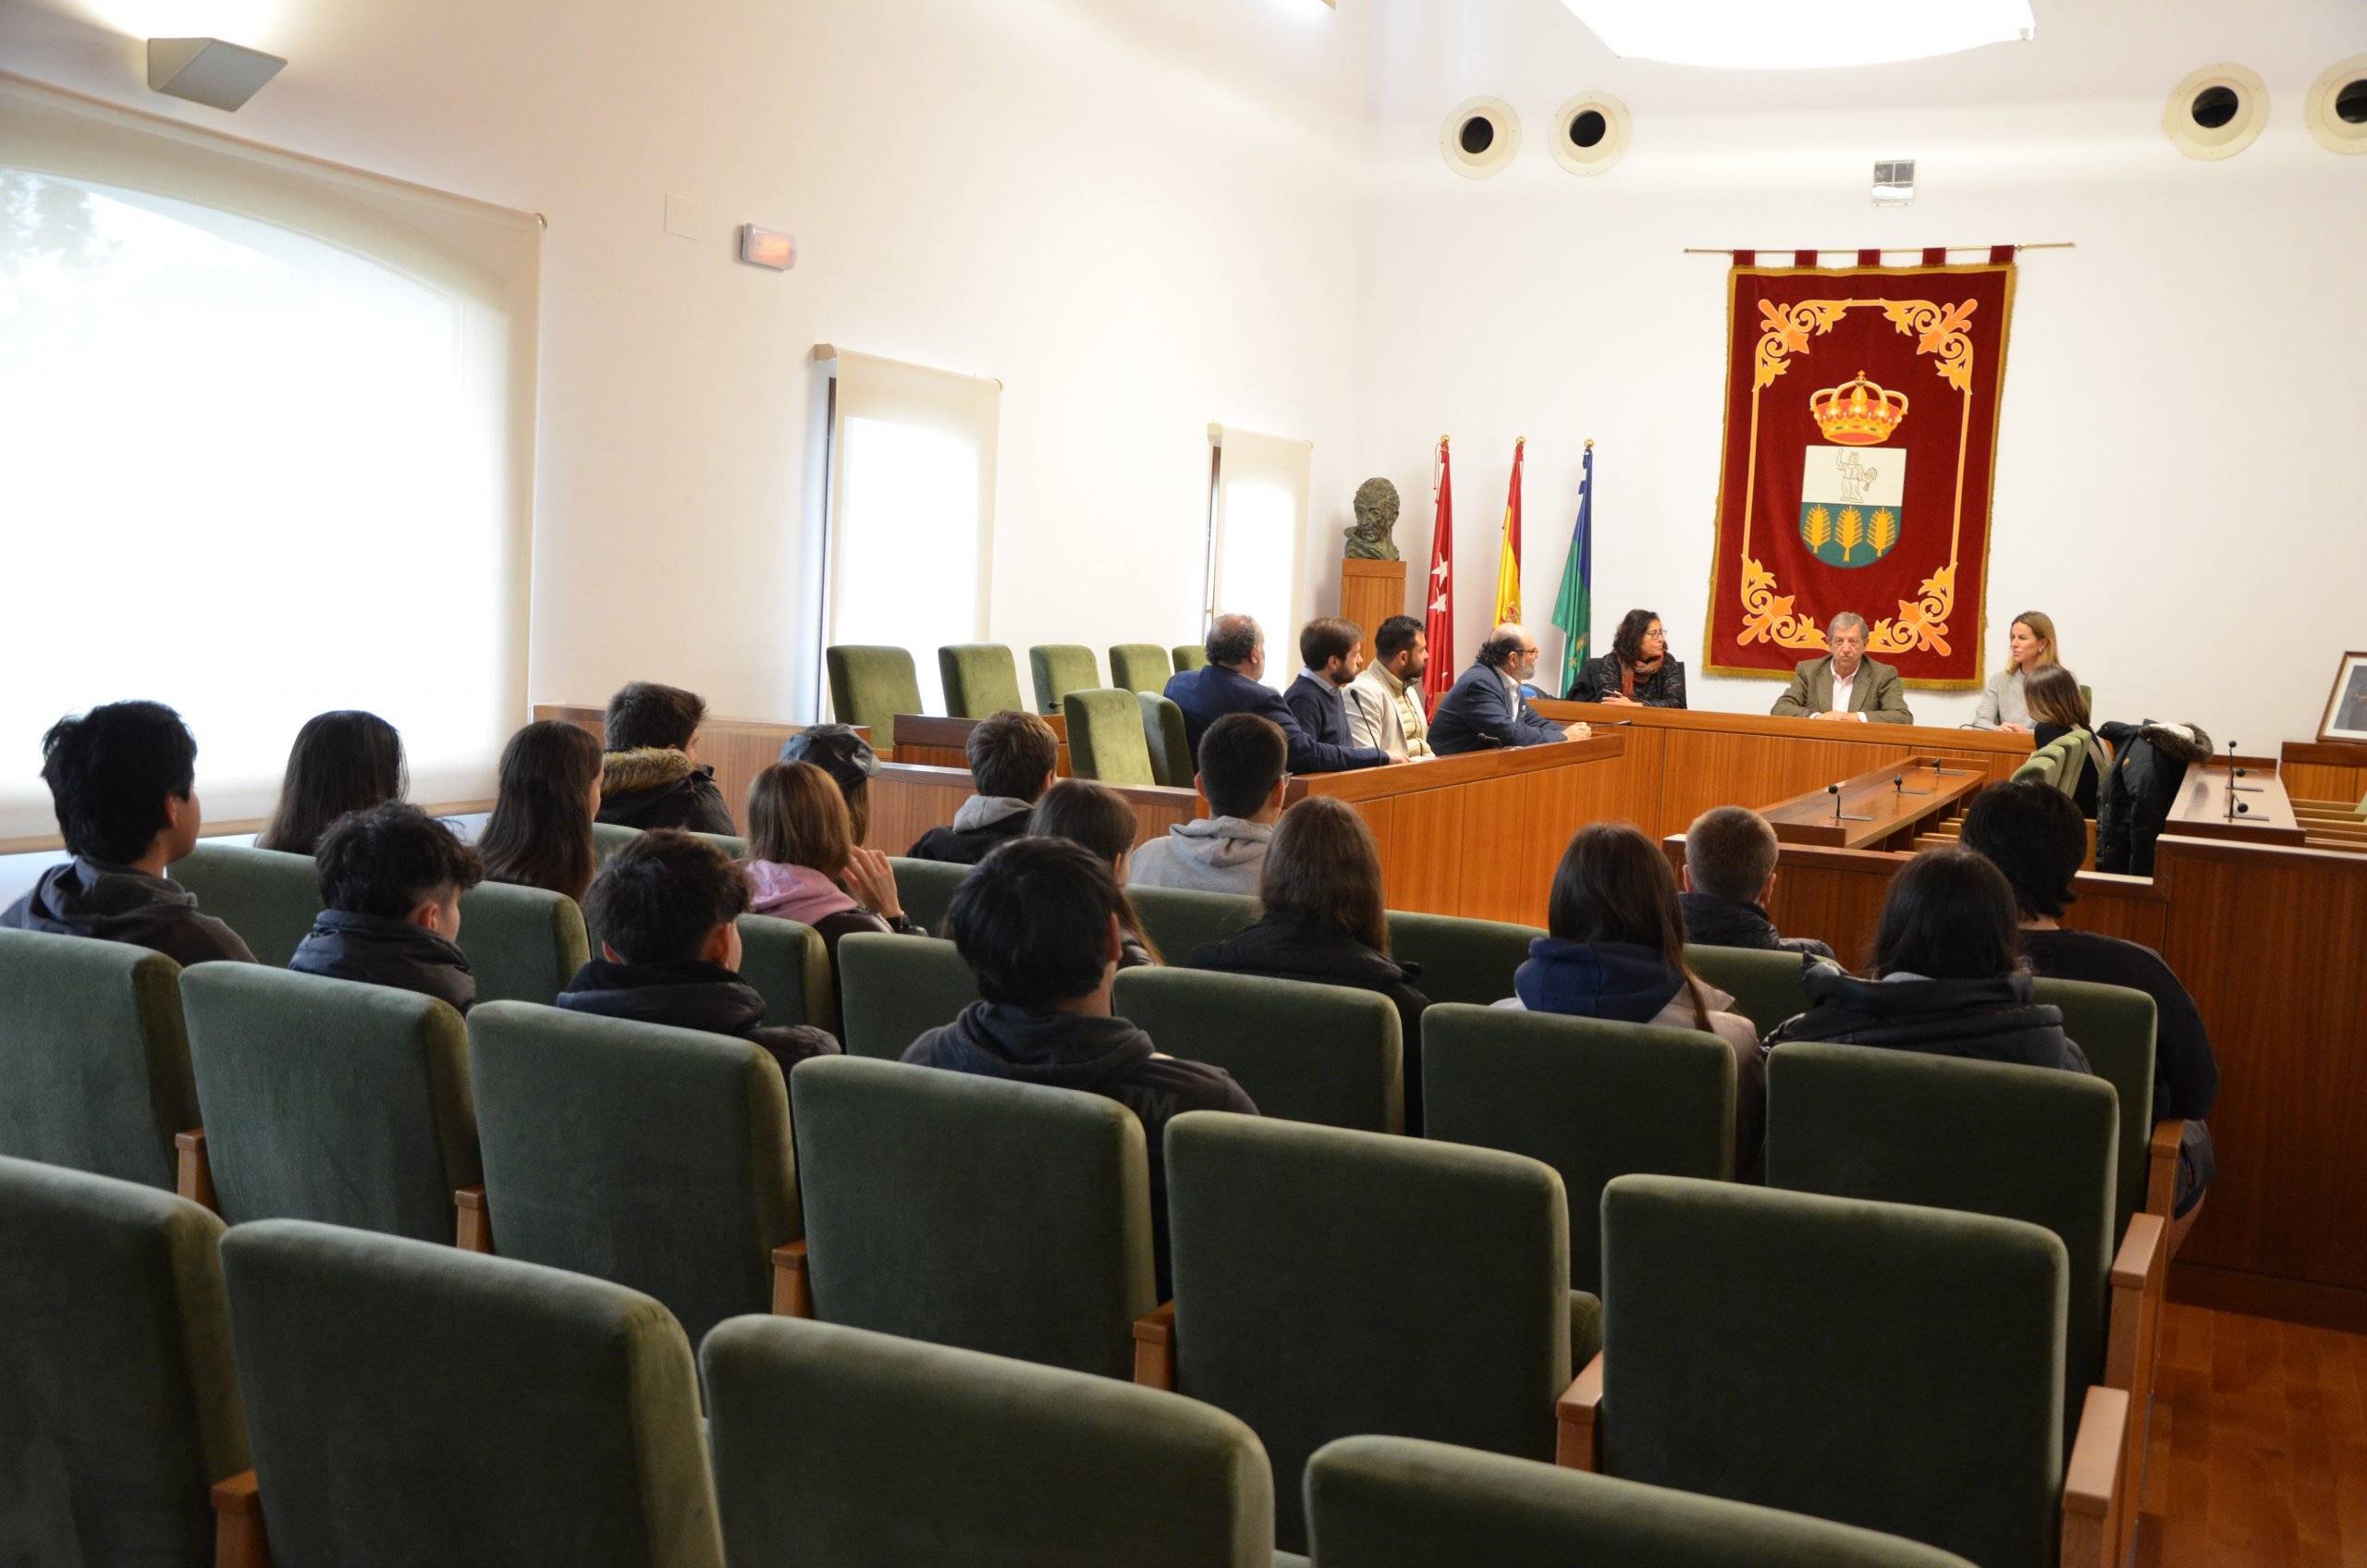 Imagen de la visita de los alumnos del CEIPSO María Moliner durante su visita.